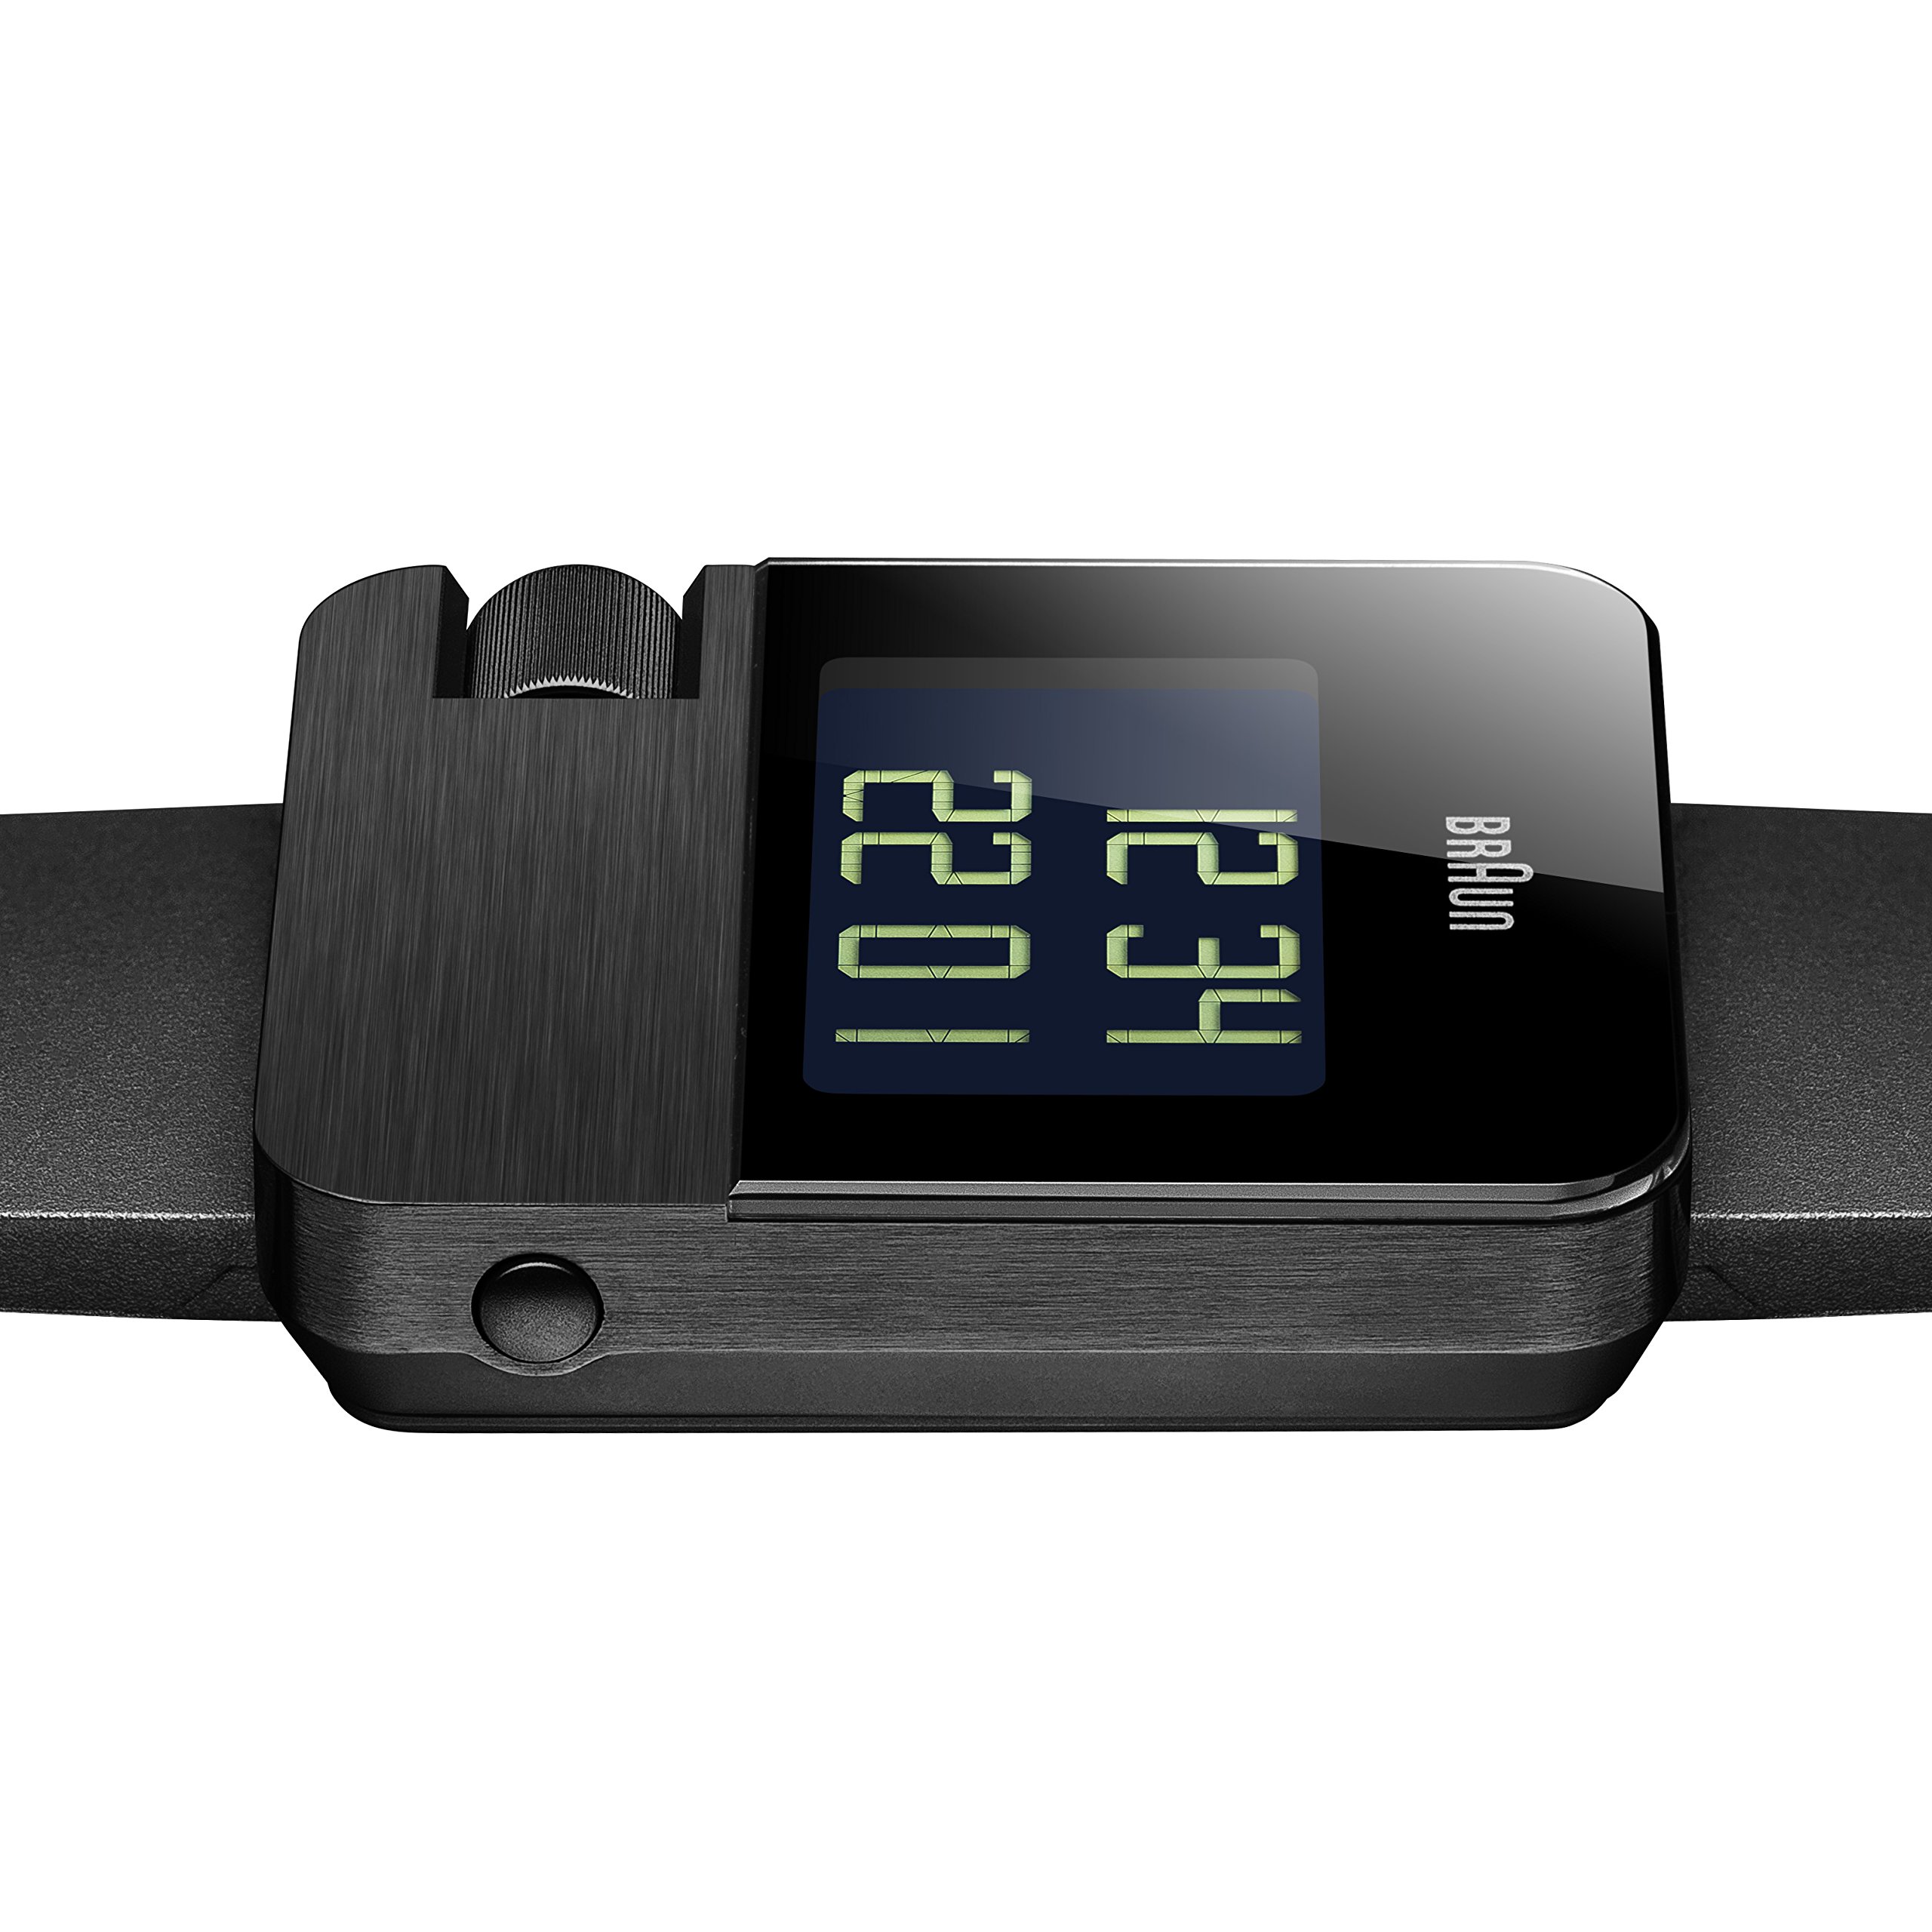 Braun Men's BN0106BKBKG Prestige Digital Digital Display Swiss Quartz Black Watch